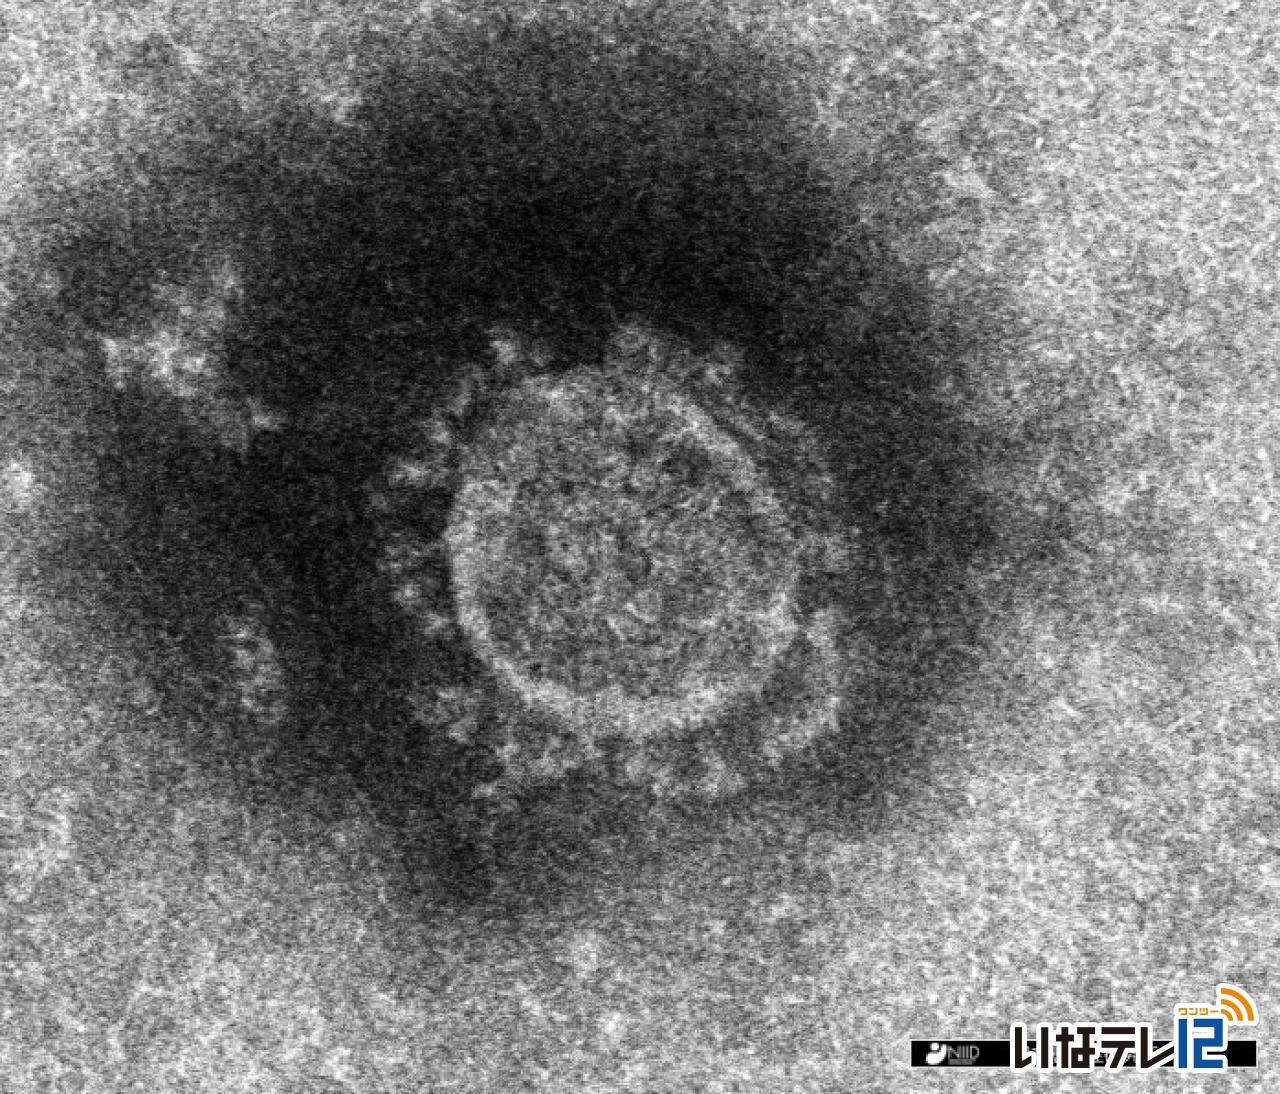 長野県内で新たに上伊那の２４８人を含む３，０３７人の新型コロナウイルス感染確認